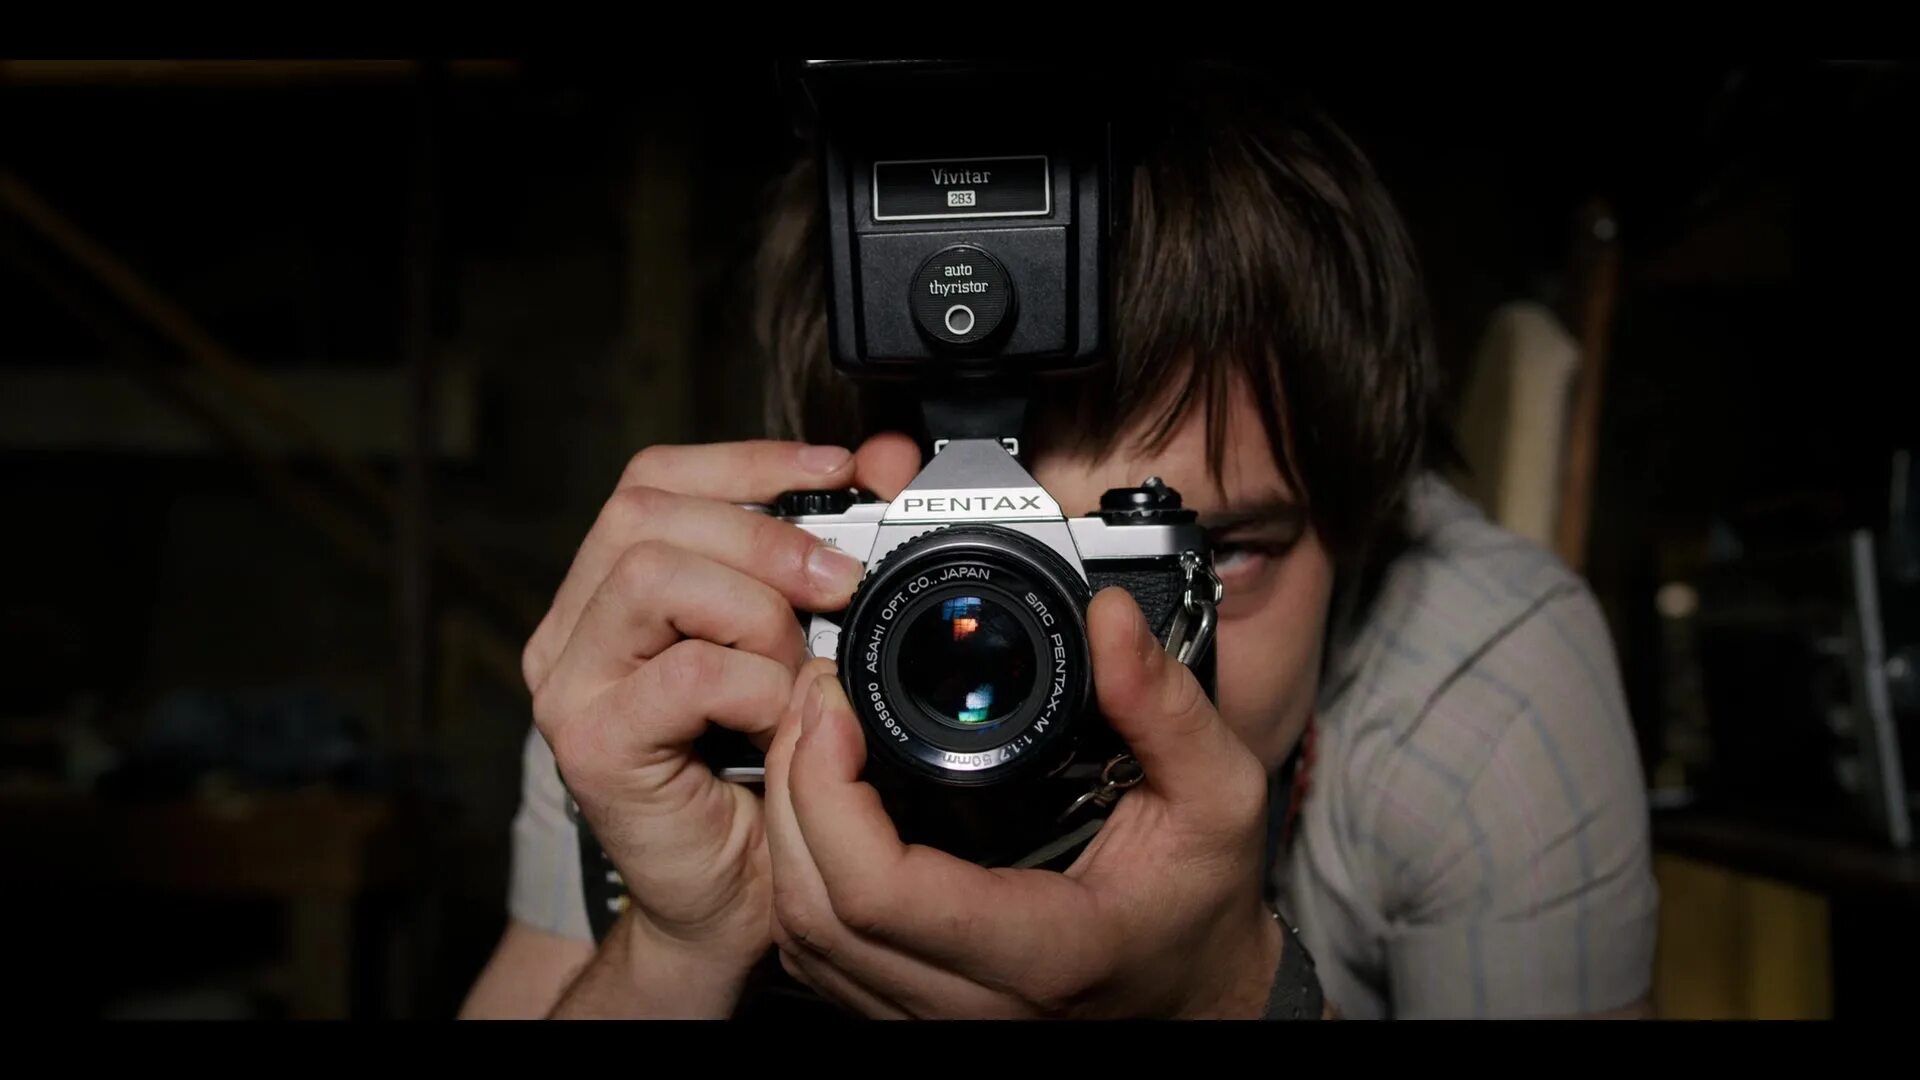 Джонатан Байерс с камерой. Джонатан Байерс очень странные дела. Мужик с фотоаппаратом. Джонатан с фотоаппаратом ОСД. Едят на камеру как называется